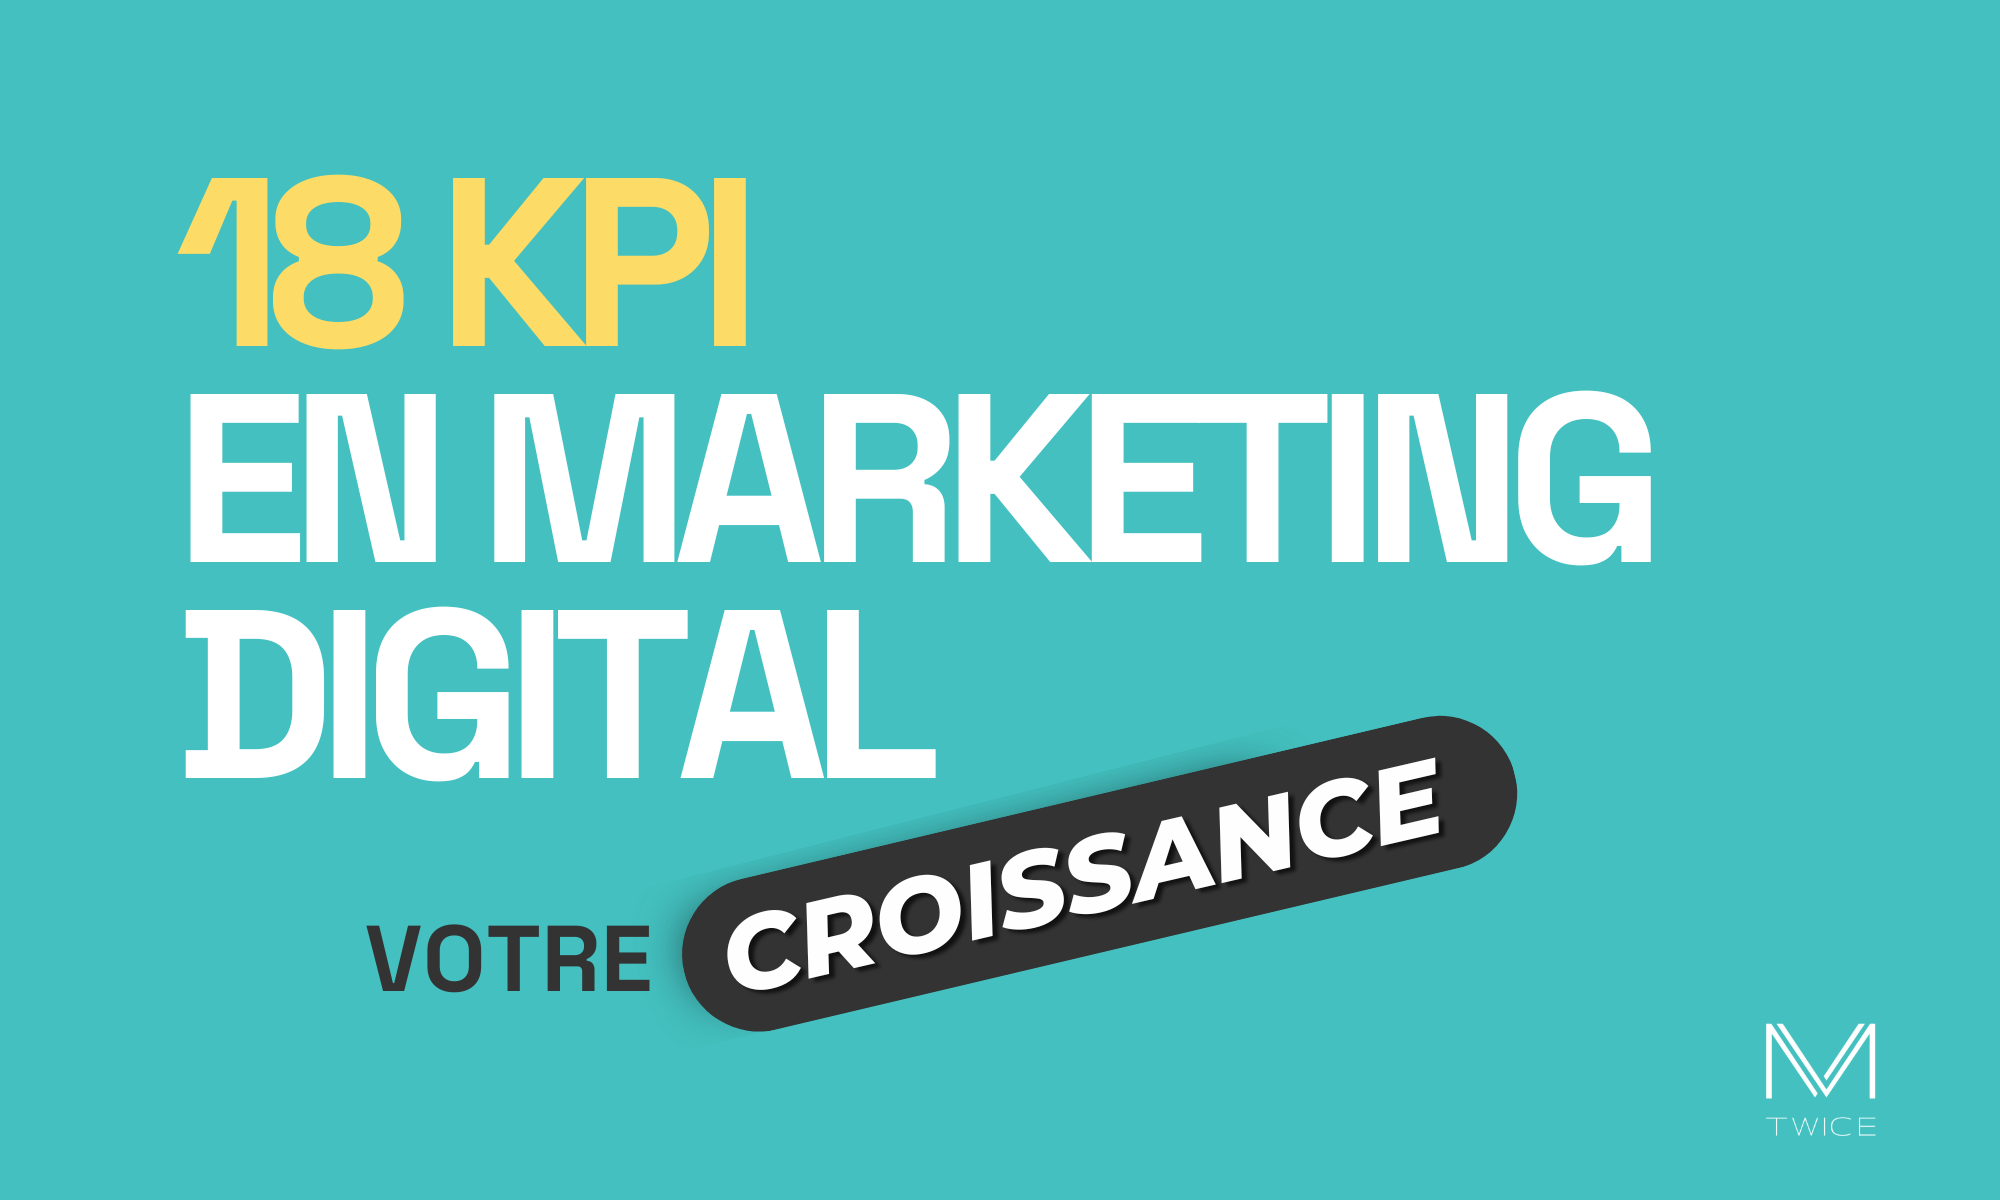 Image en vedette avec un fond turquoise et un texte en français qui dit : ‘18 KPI de marketing digital pour piloter votre croissance’ Le logo ‘M TWICE’ est situé en bas à droite, indiquant l’entreprise ou le site web associé.